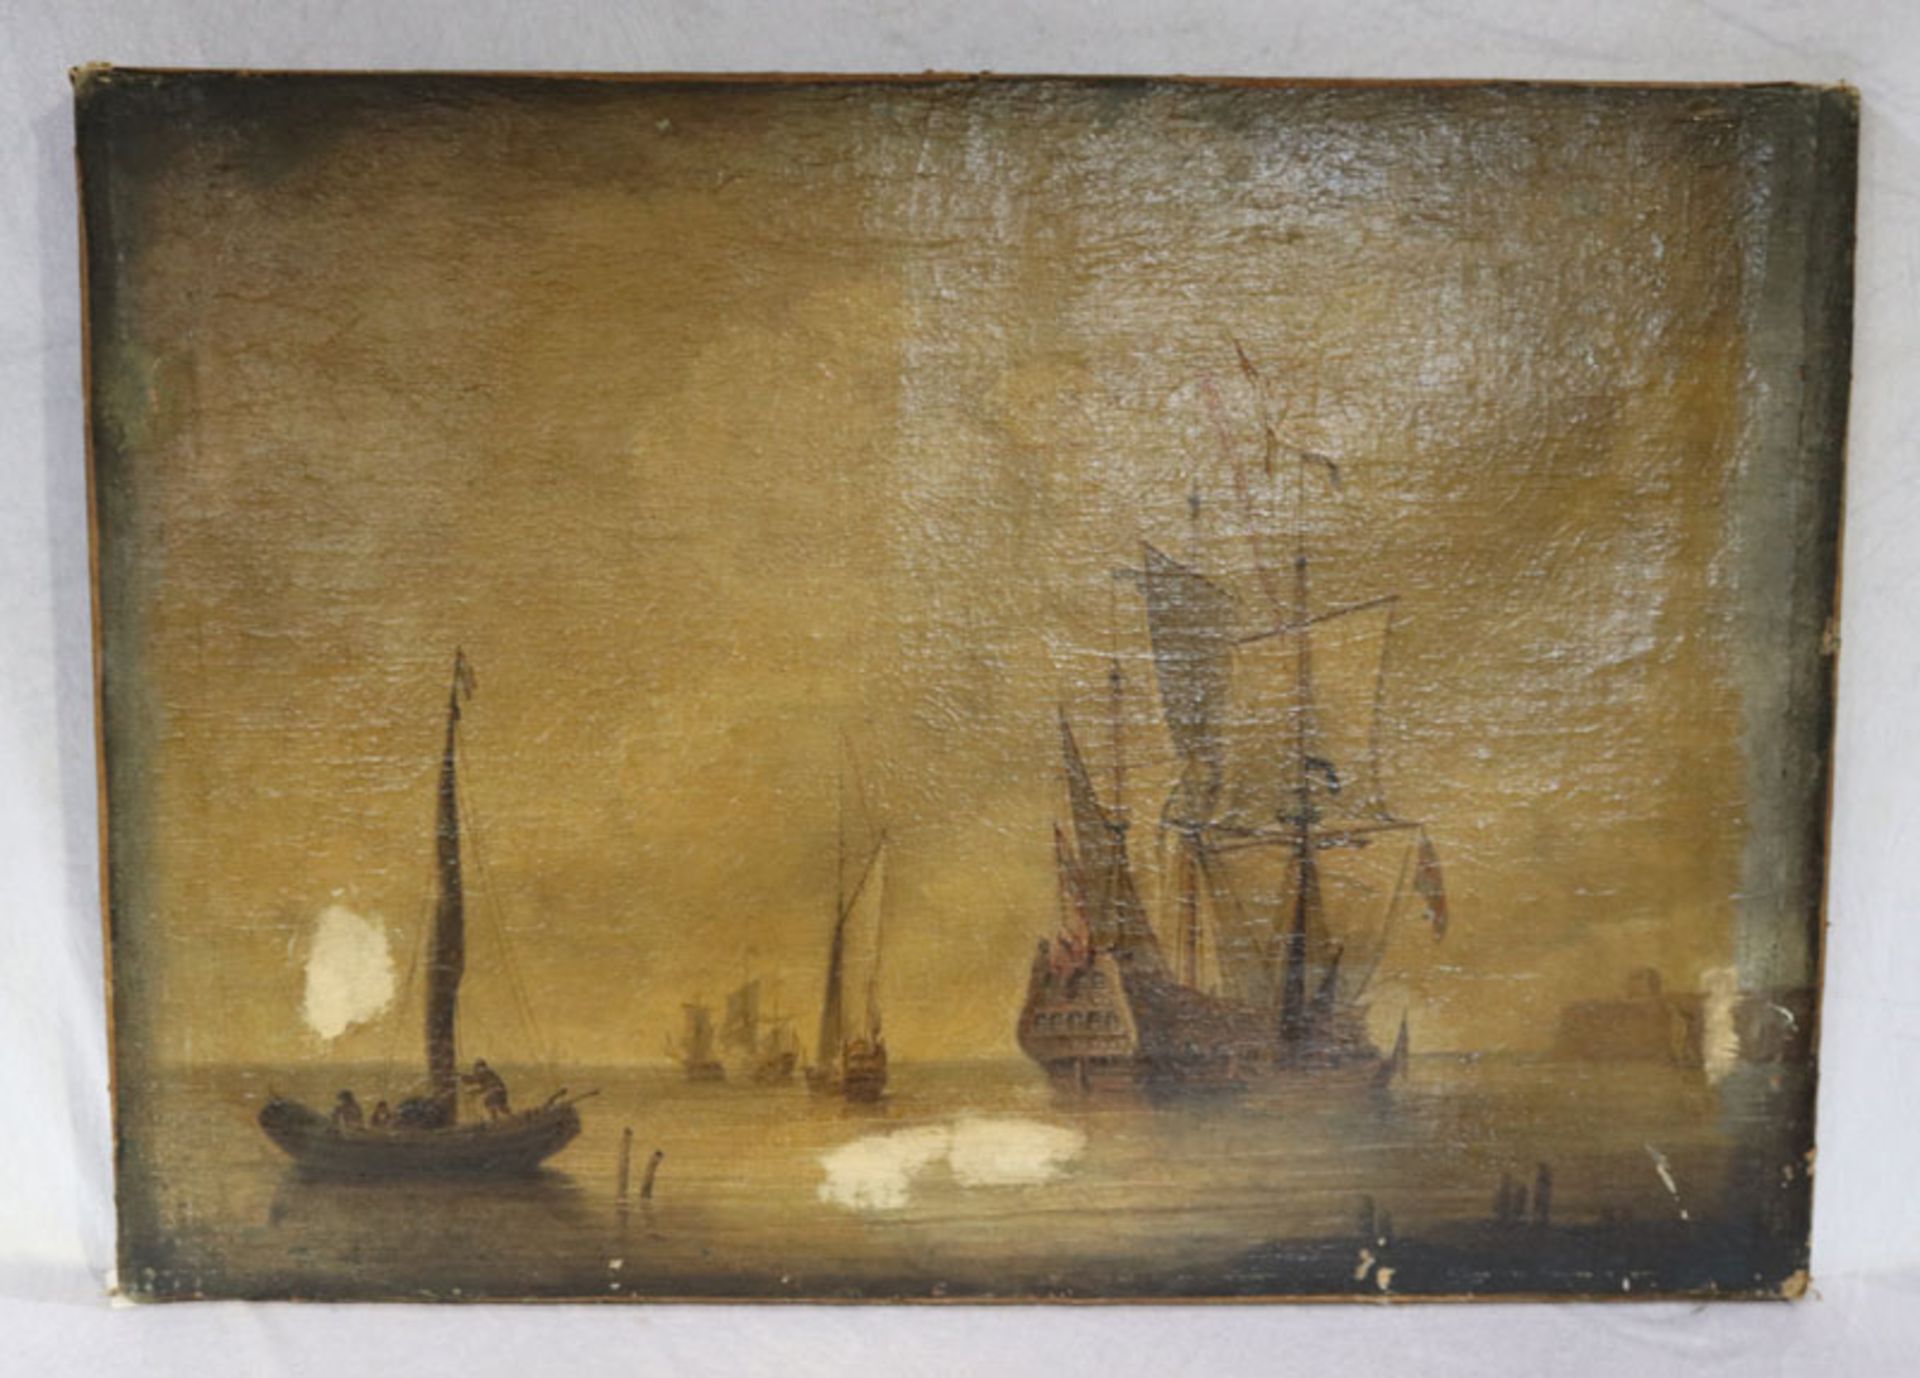 Gemälde ÖL/LW 'Küsten-Szenerie mit Segelschiffen', LW und Bildoberfläche beschädigt, ohne Rahmen